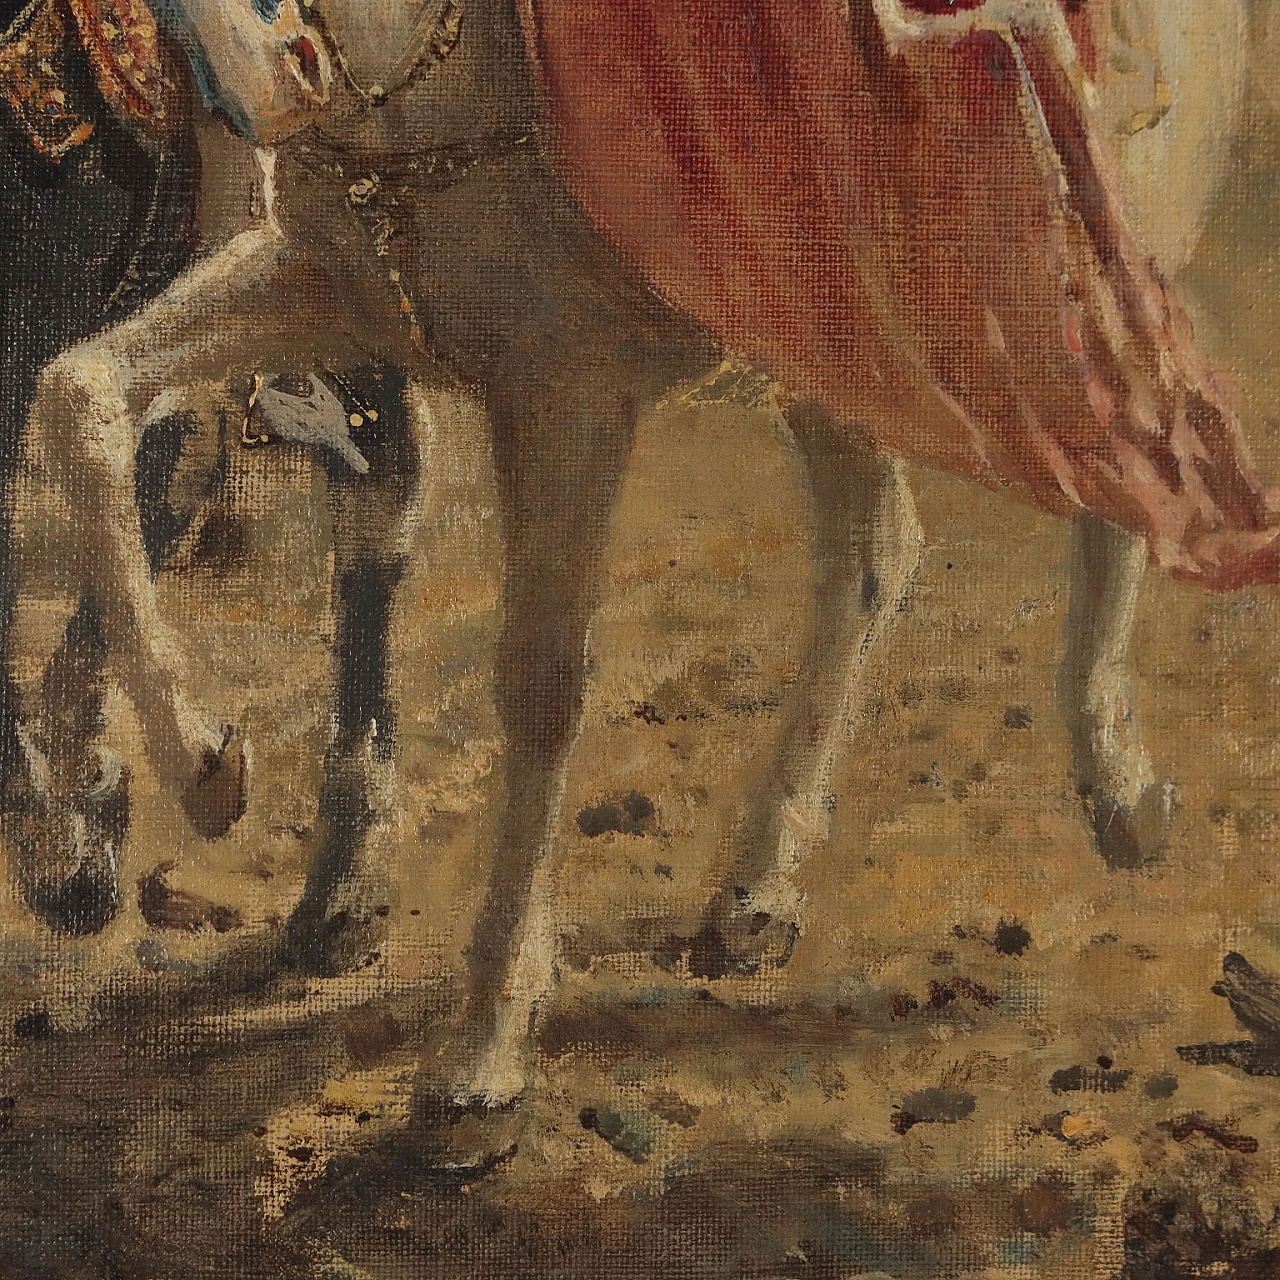 F. Carcano, Bice e Ottorino Visconti, oil on canvas, 19th century 7